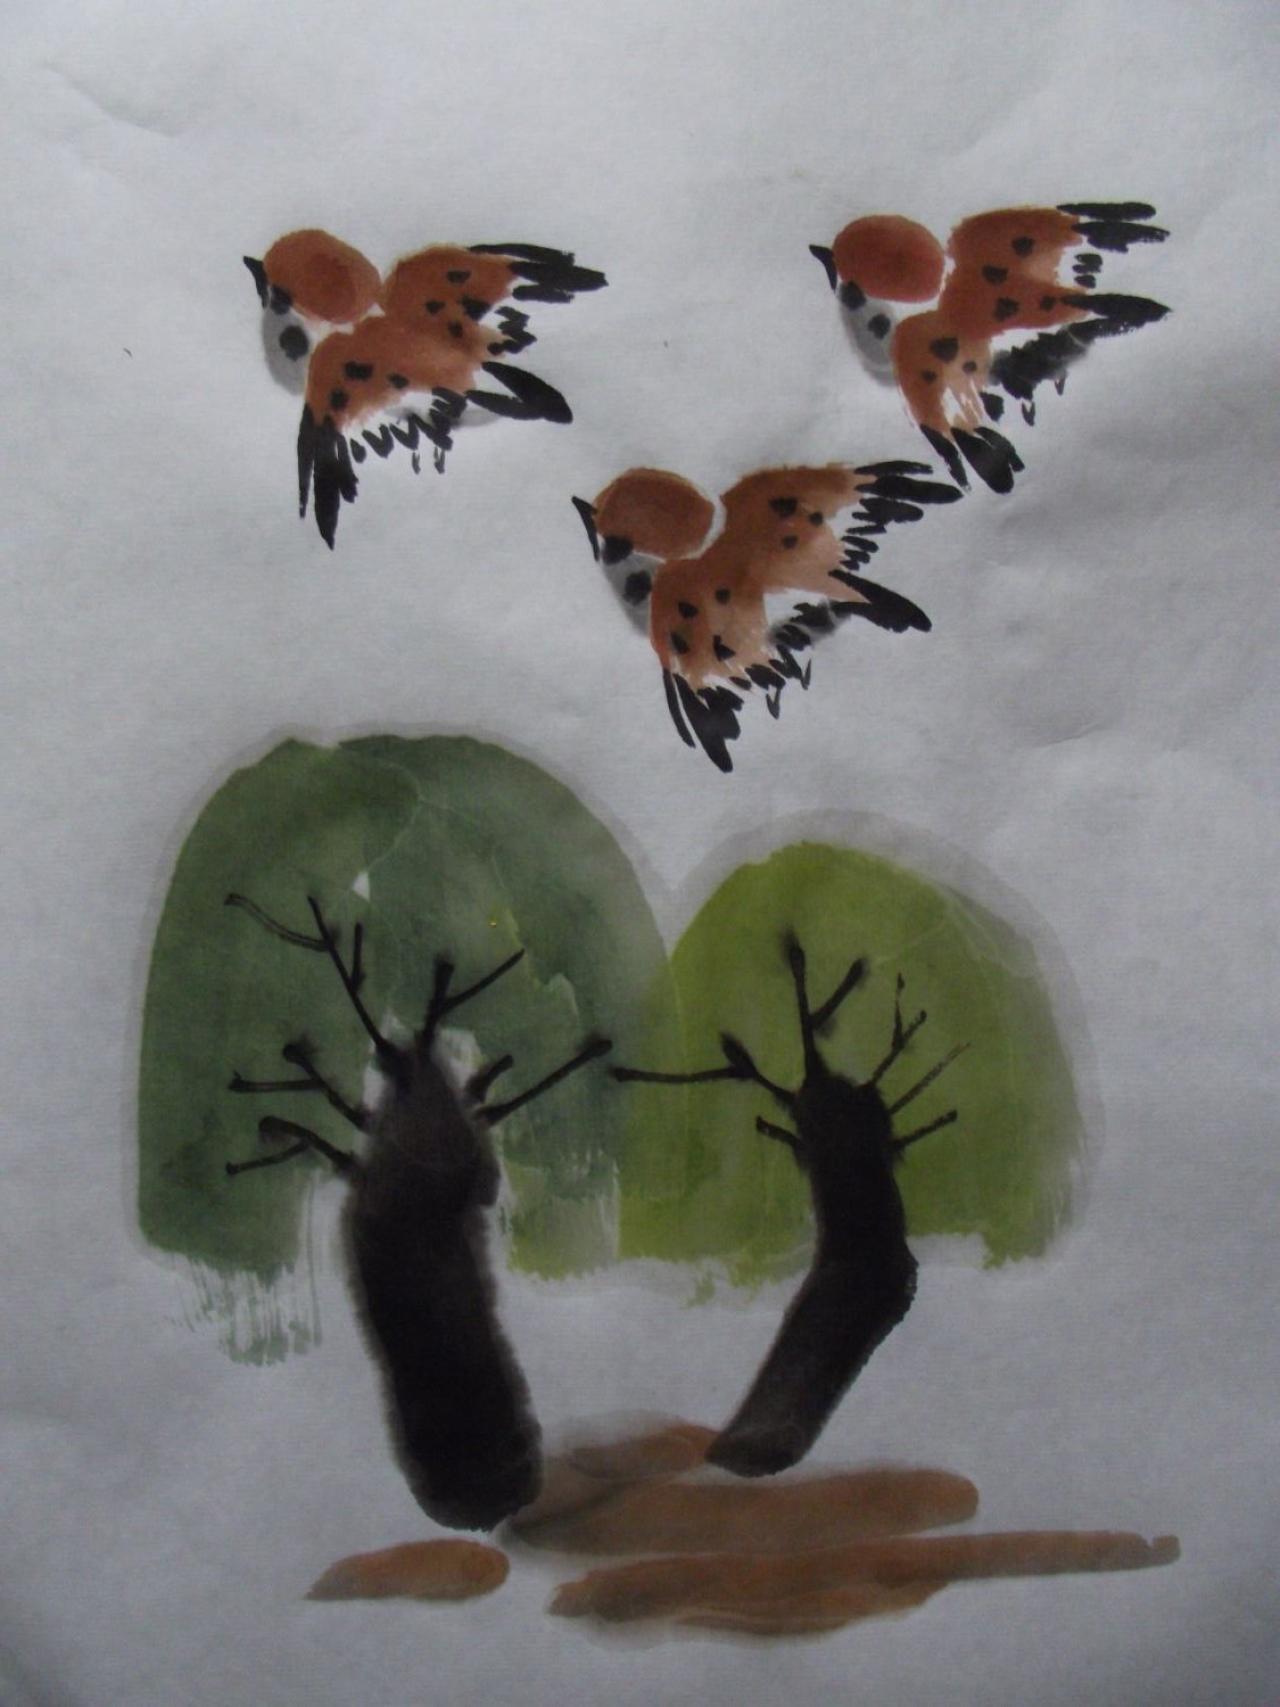 麻雀和两棵小树 实心画法